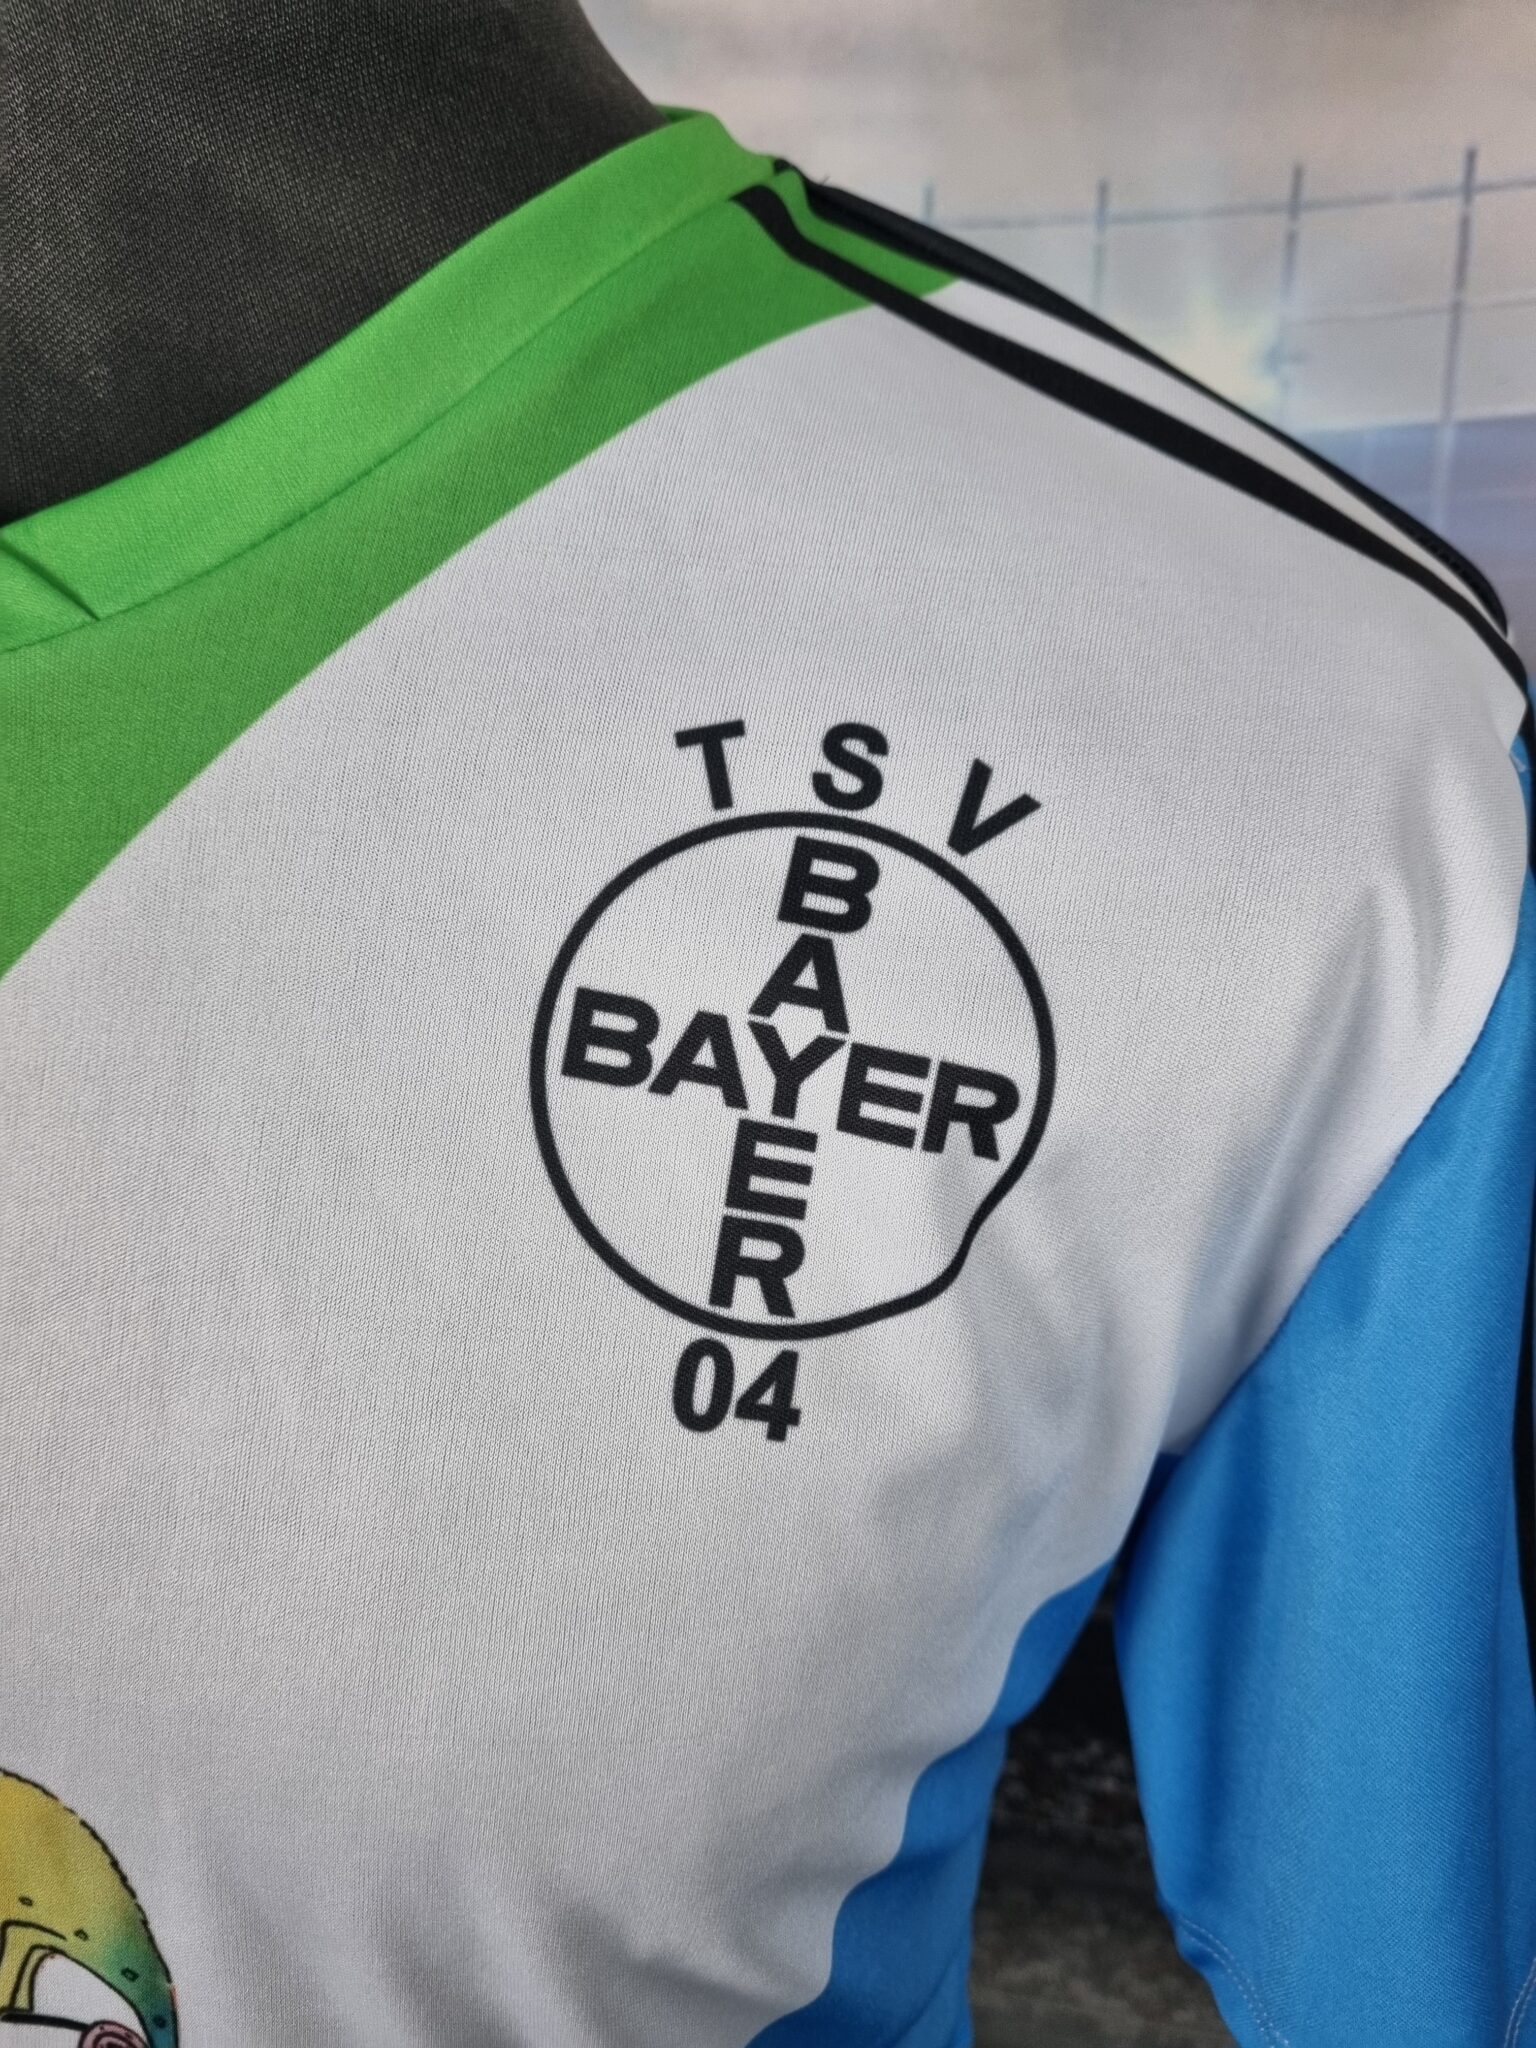 TSV Bayer 04 Leverkusen Special Trikot 1991/1992 "Talcid" Retro Shirt Football Jersey - Sport Club Memories